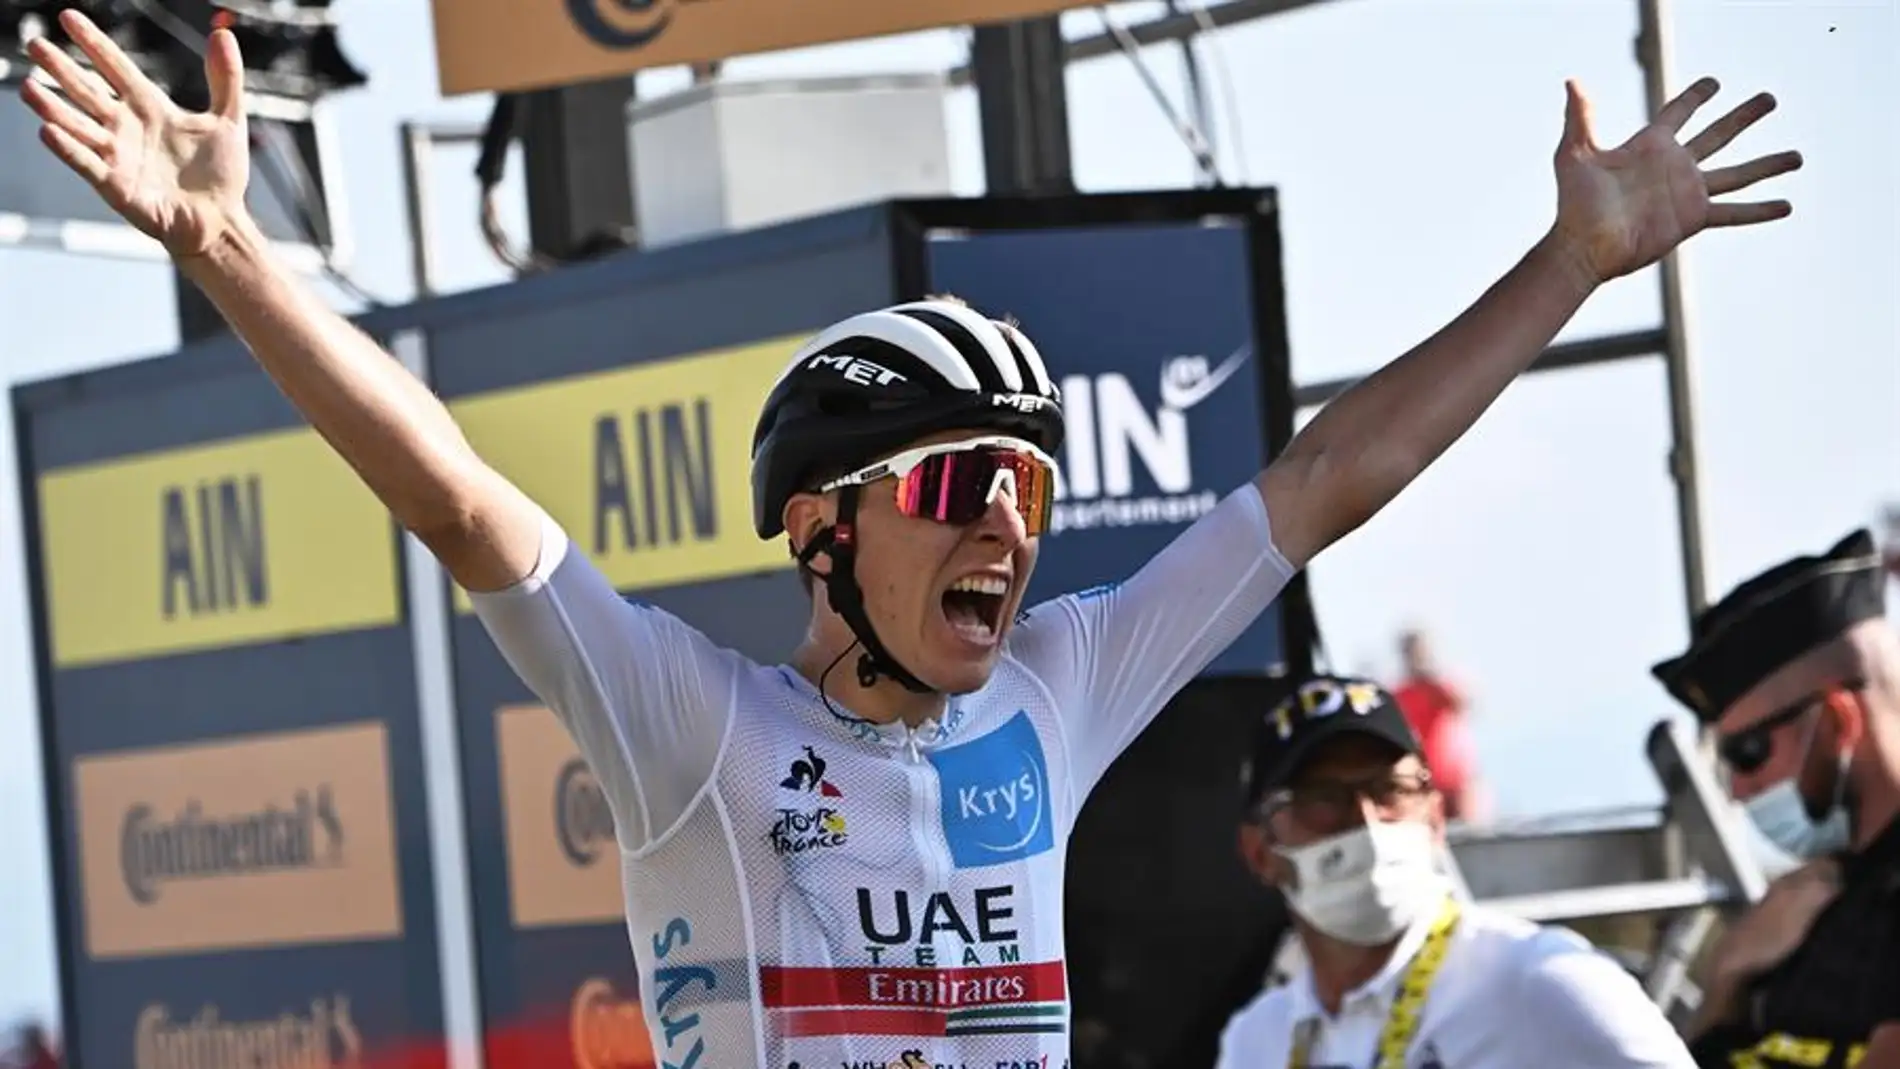 El ciclista esloveno Tadej Pogacar (UAE Team Emirates), celebra la victoria en la 15ª etapa del Tour